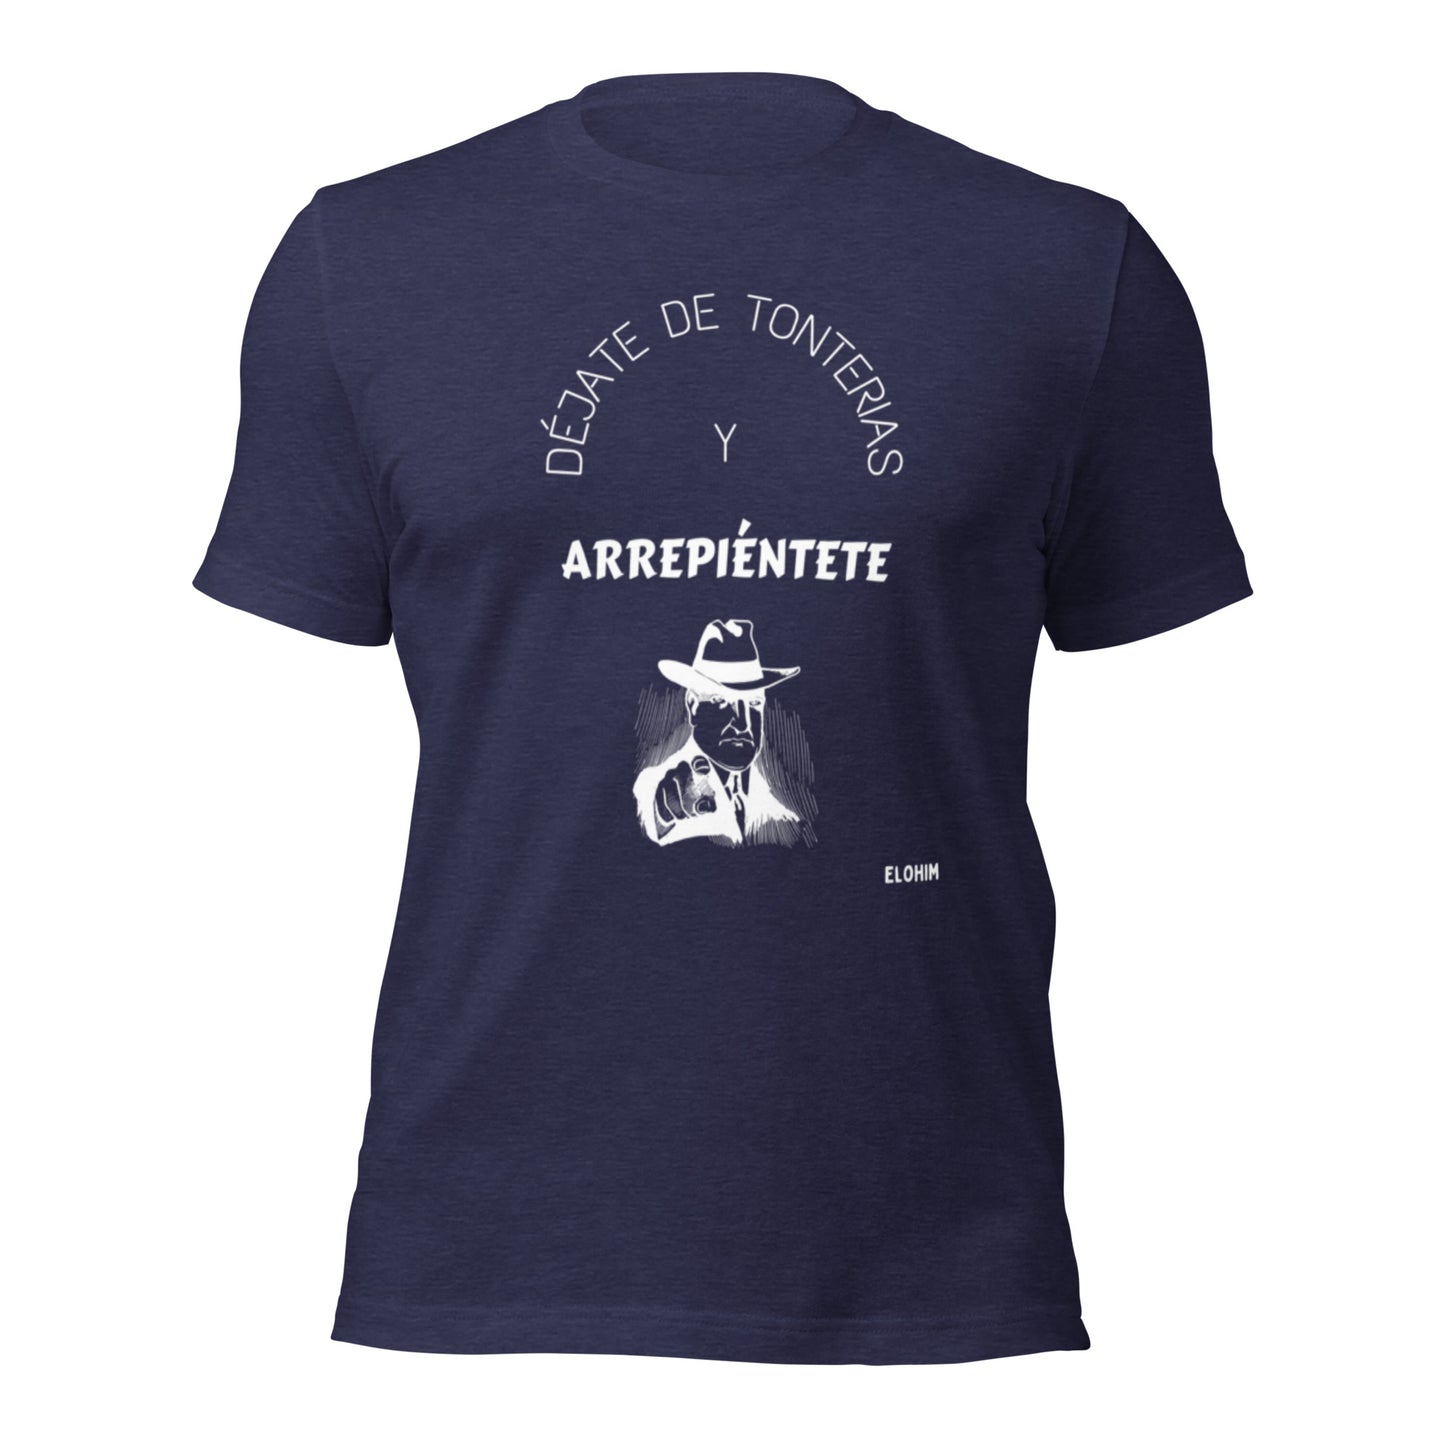 Camiseta de manga corta unisex - Arrepiéntete